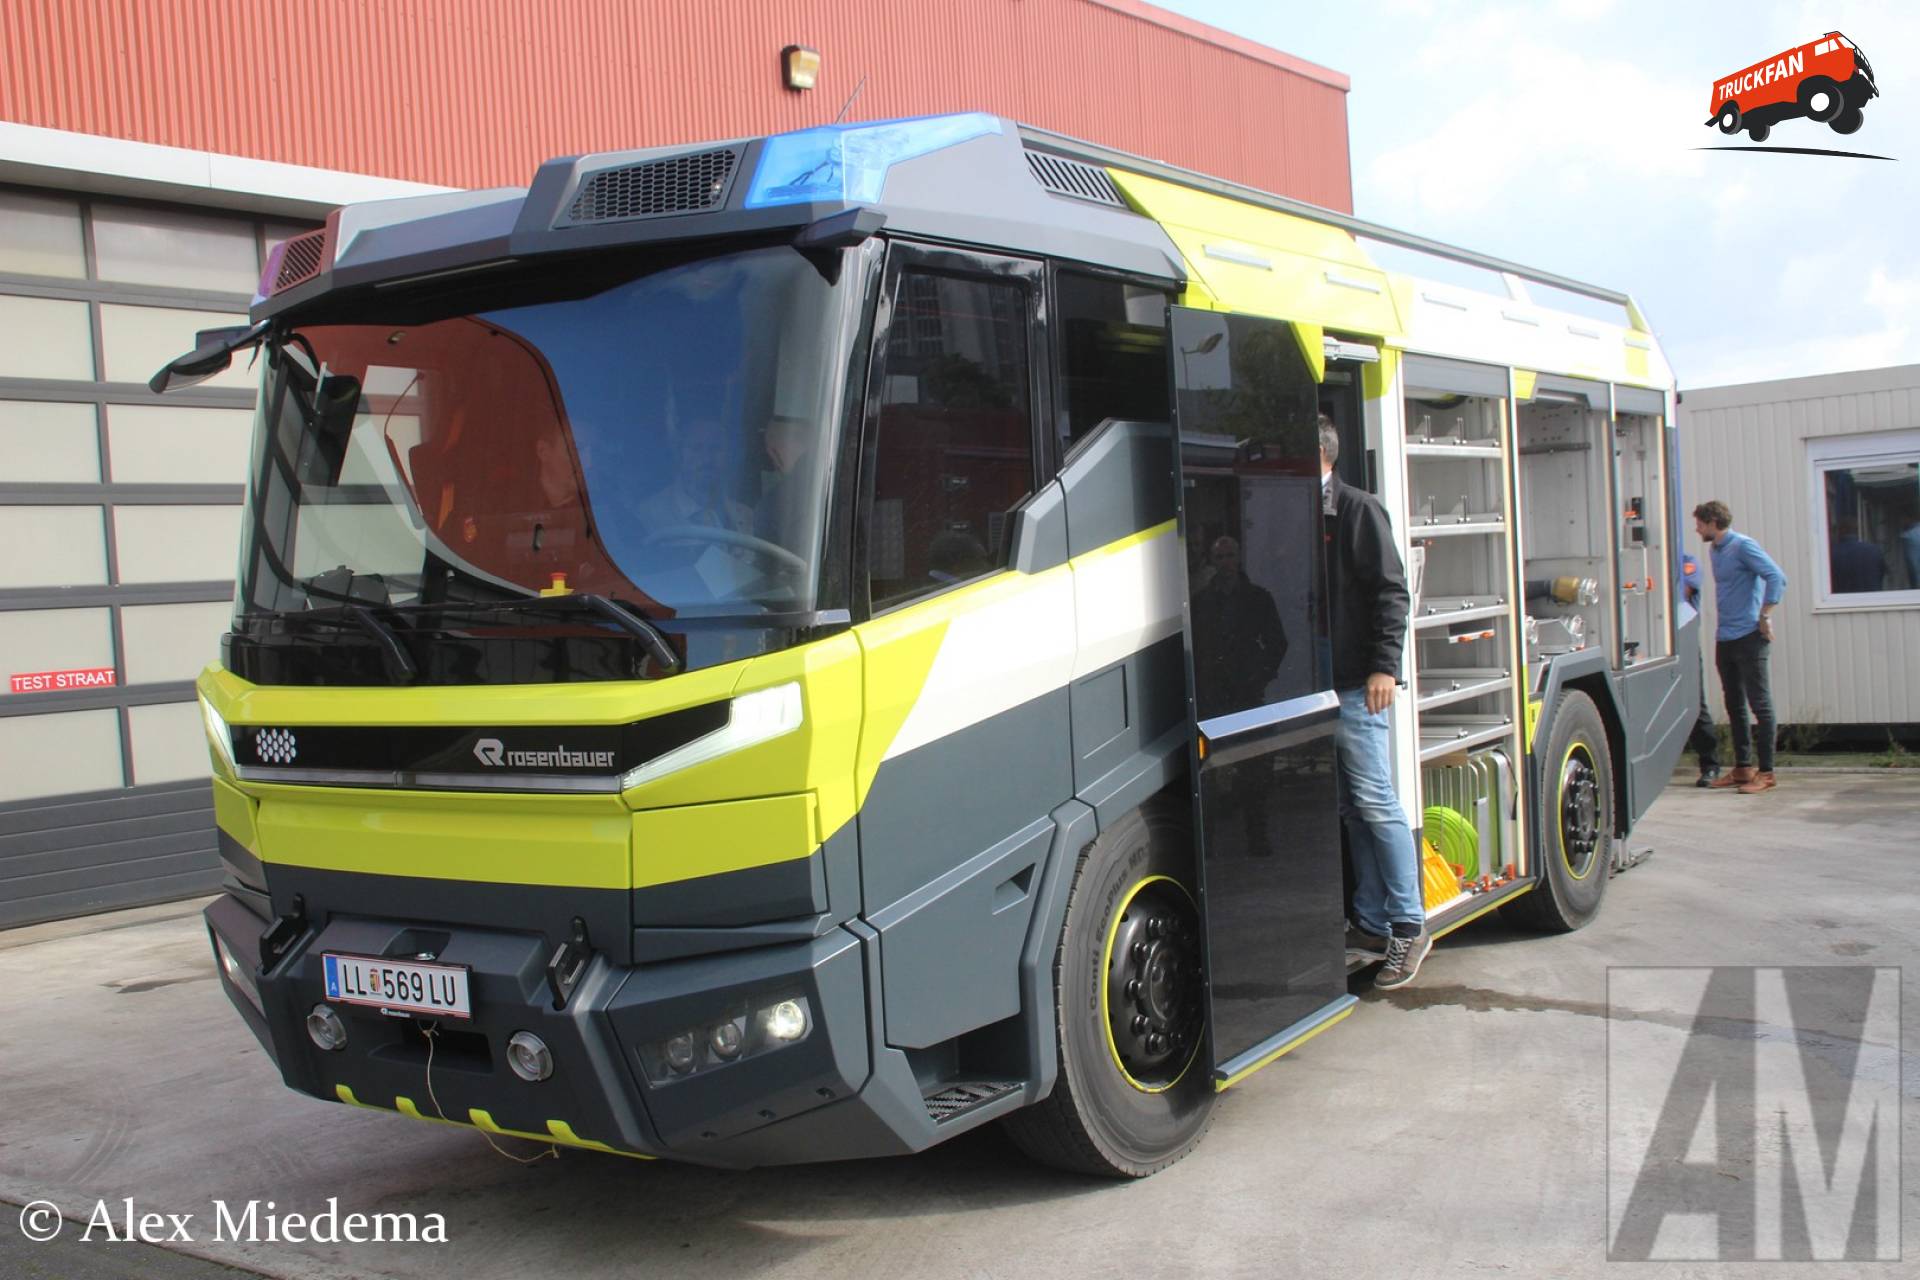 Rosenbauer Concept Fire Truck